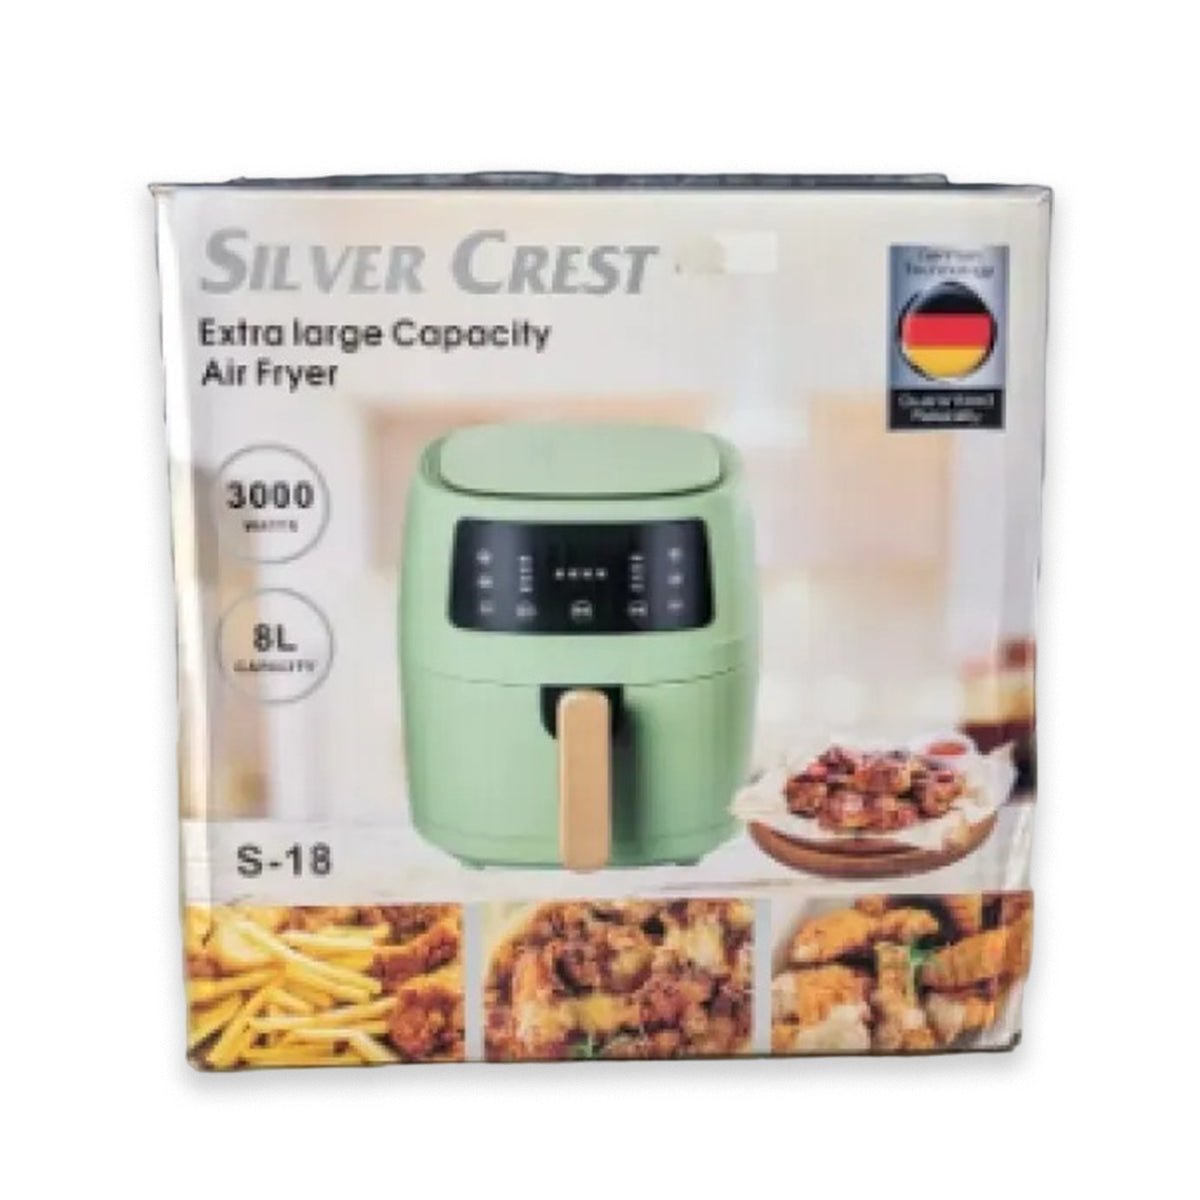 Silver Crest Air Fryer 8 Liter